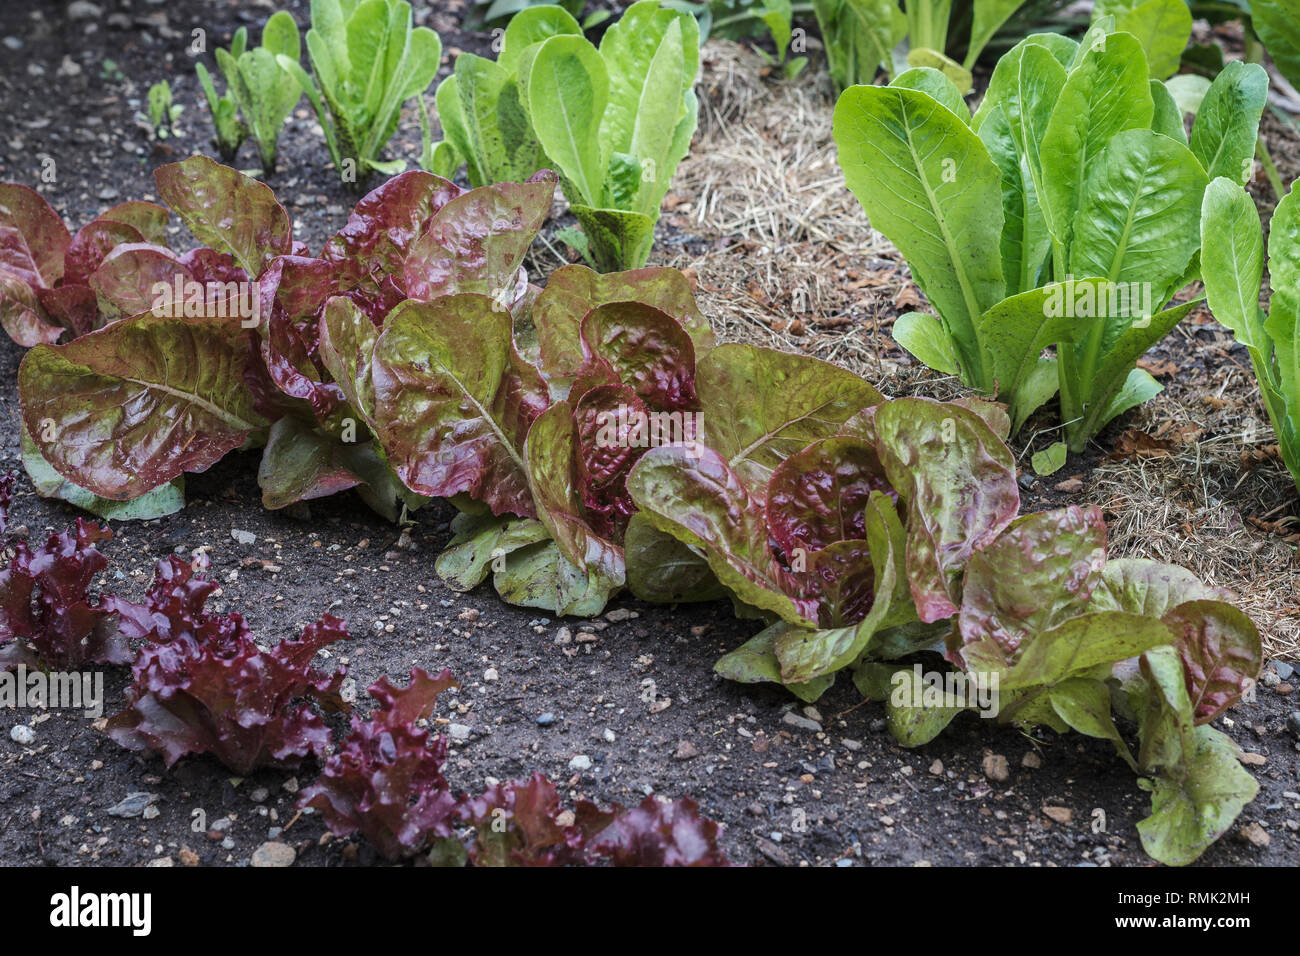 Drei Sorten von grüne und rote Kopfsalat (Cos/romaine Kopfsalat und looseleaf Typen) wachsen in einem Hinterhof Garten, teilweise mit Rasen rasenschnitt Laub bedeckten. Stockfoto